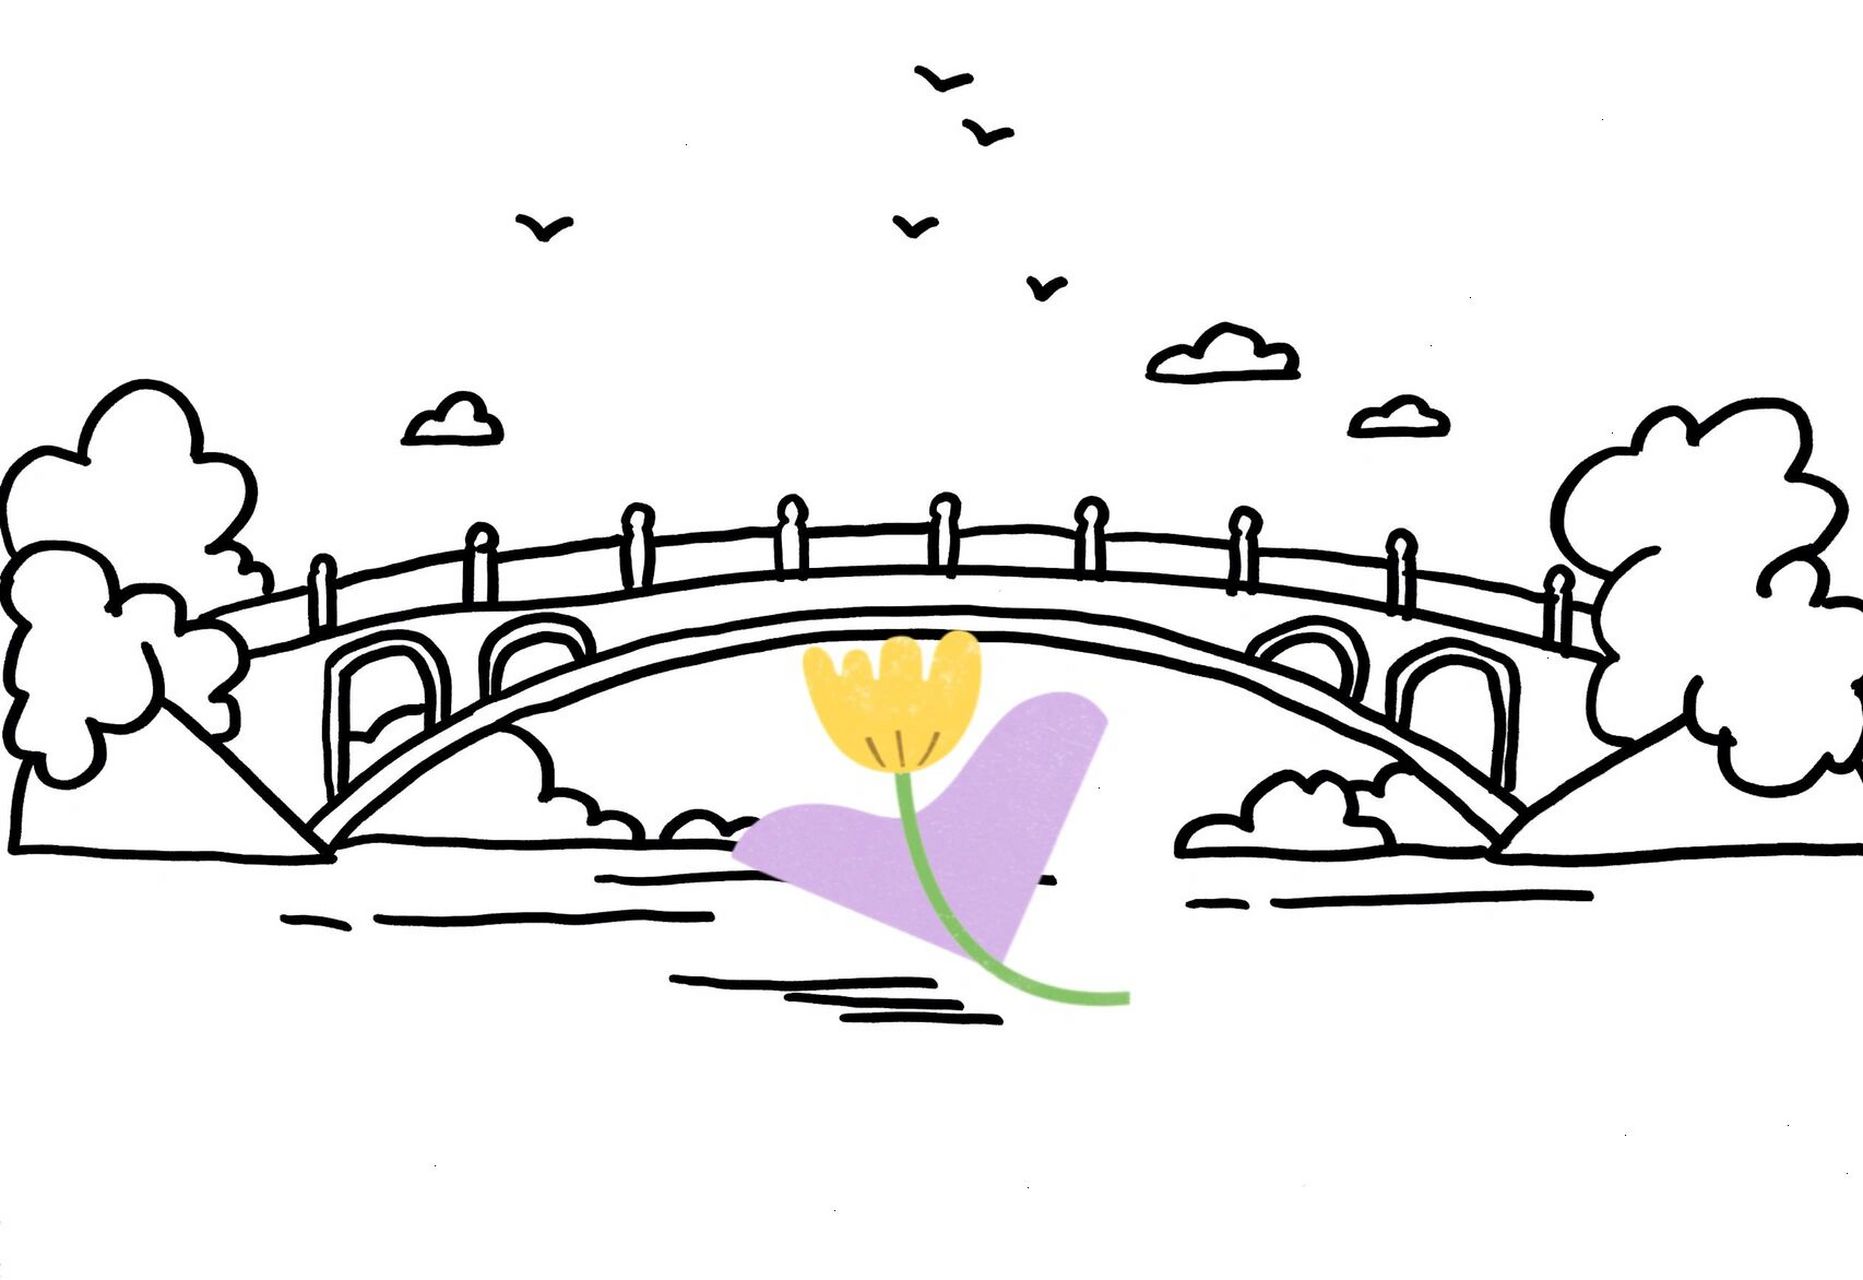 赵州桥的简笔画图片图片